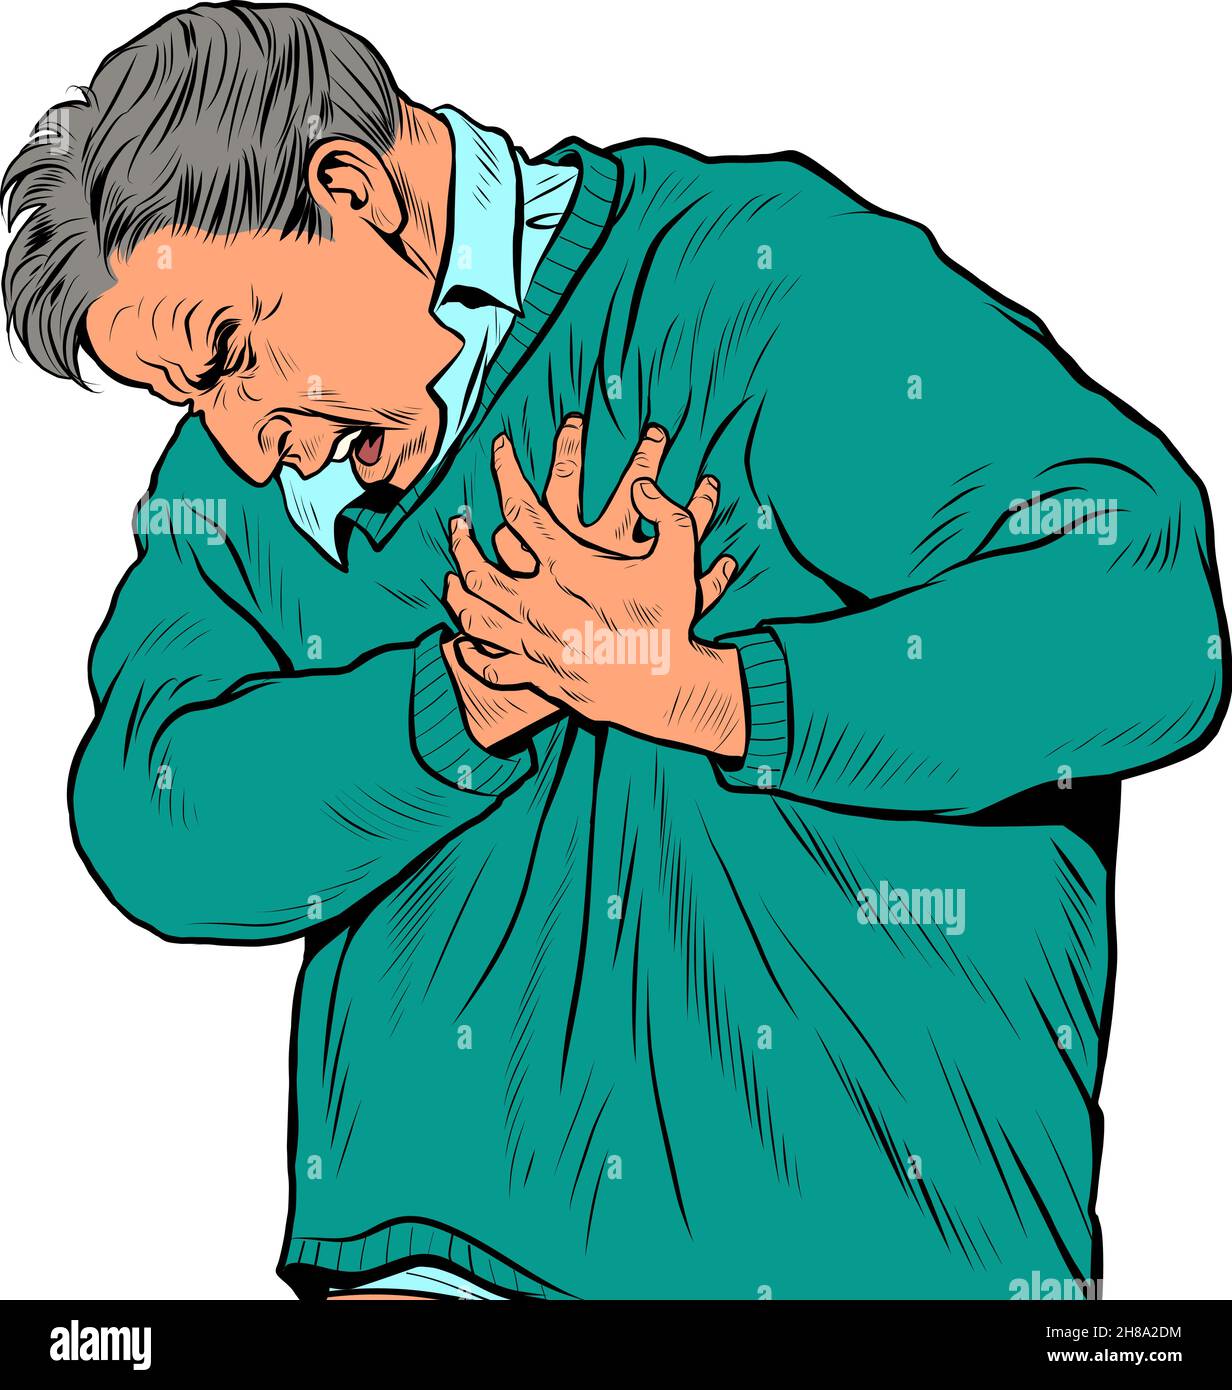 un uomo anziano dolore cardiaco, infarto miocardico crisi ipertensiva aritmia e altre malattie di cardiologia Illustrazione Vettoriale